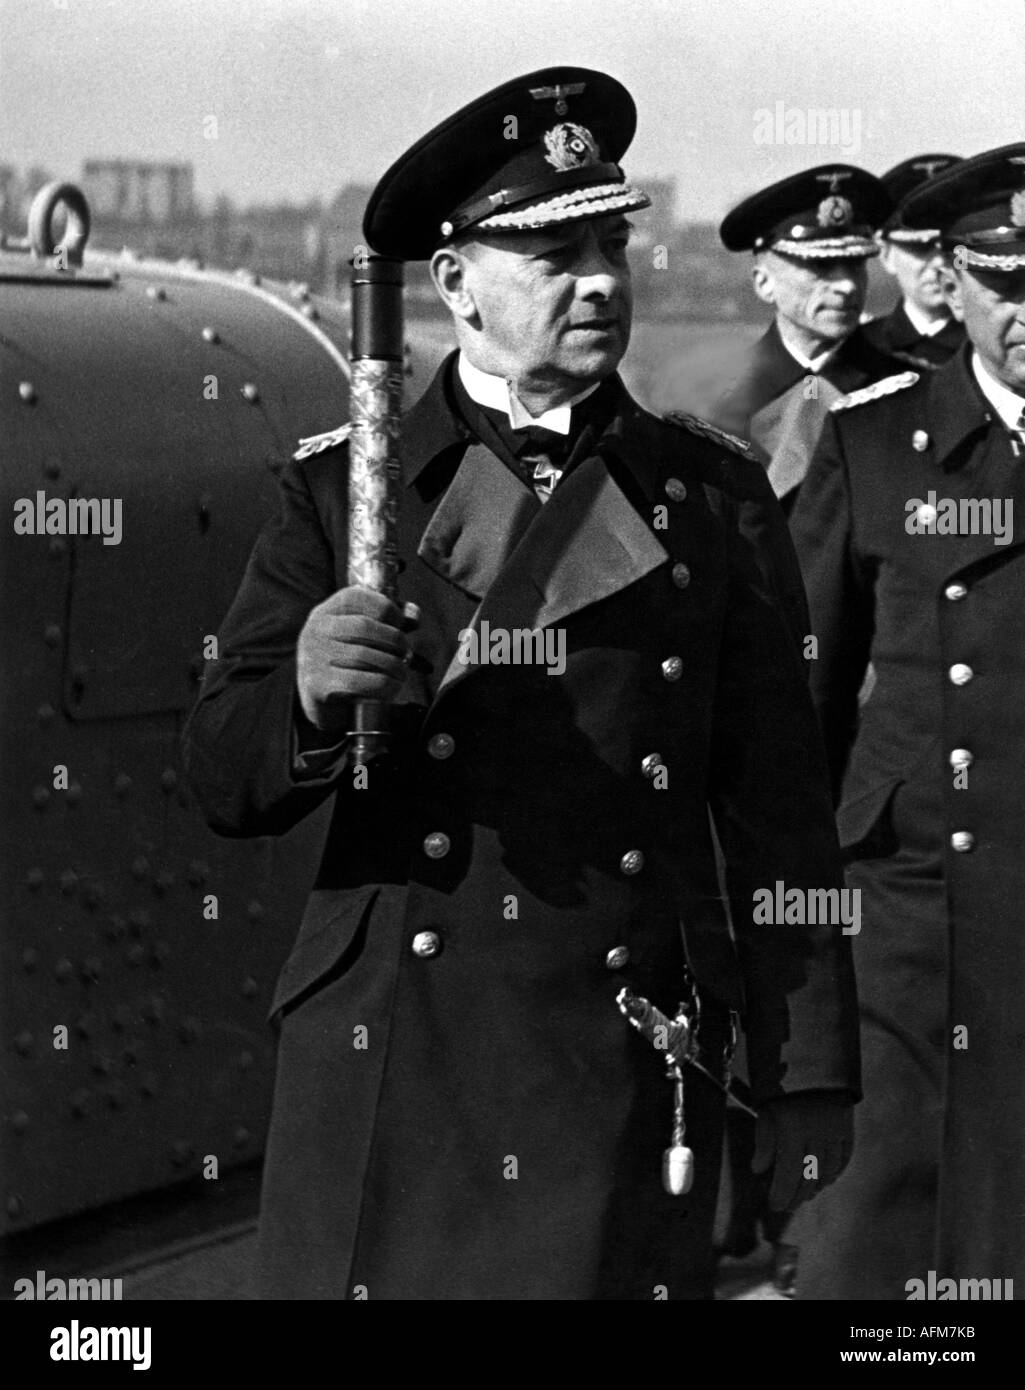 Raeder, Erich, 24.4.1876 - 6. 11.1960, amiral allemand, commandant en chef de la marine allemande 1.6.1935 - 30.1.1943, demi-longueur, vers 1940, Banque D'Images